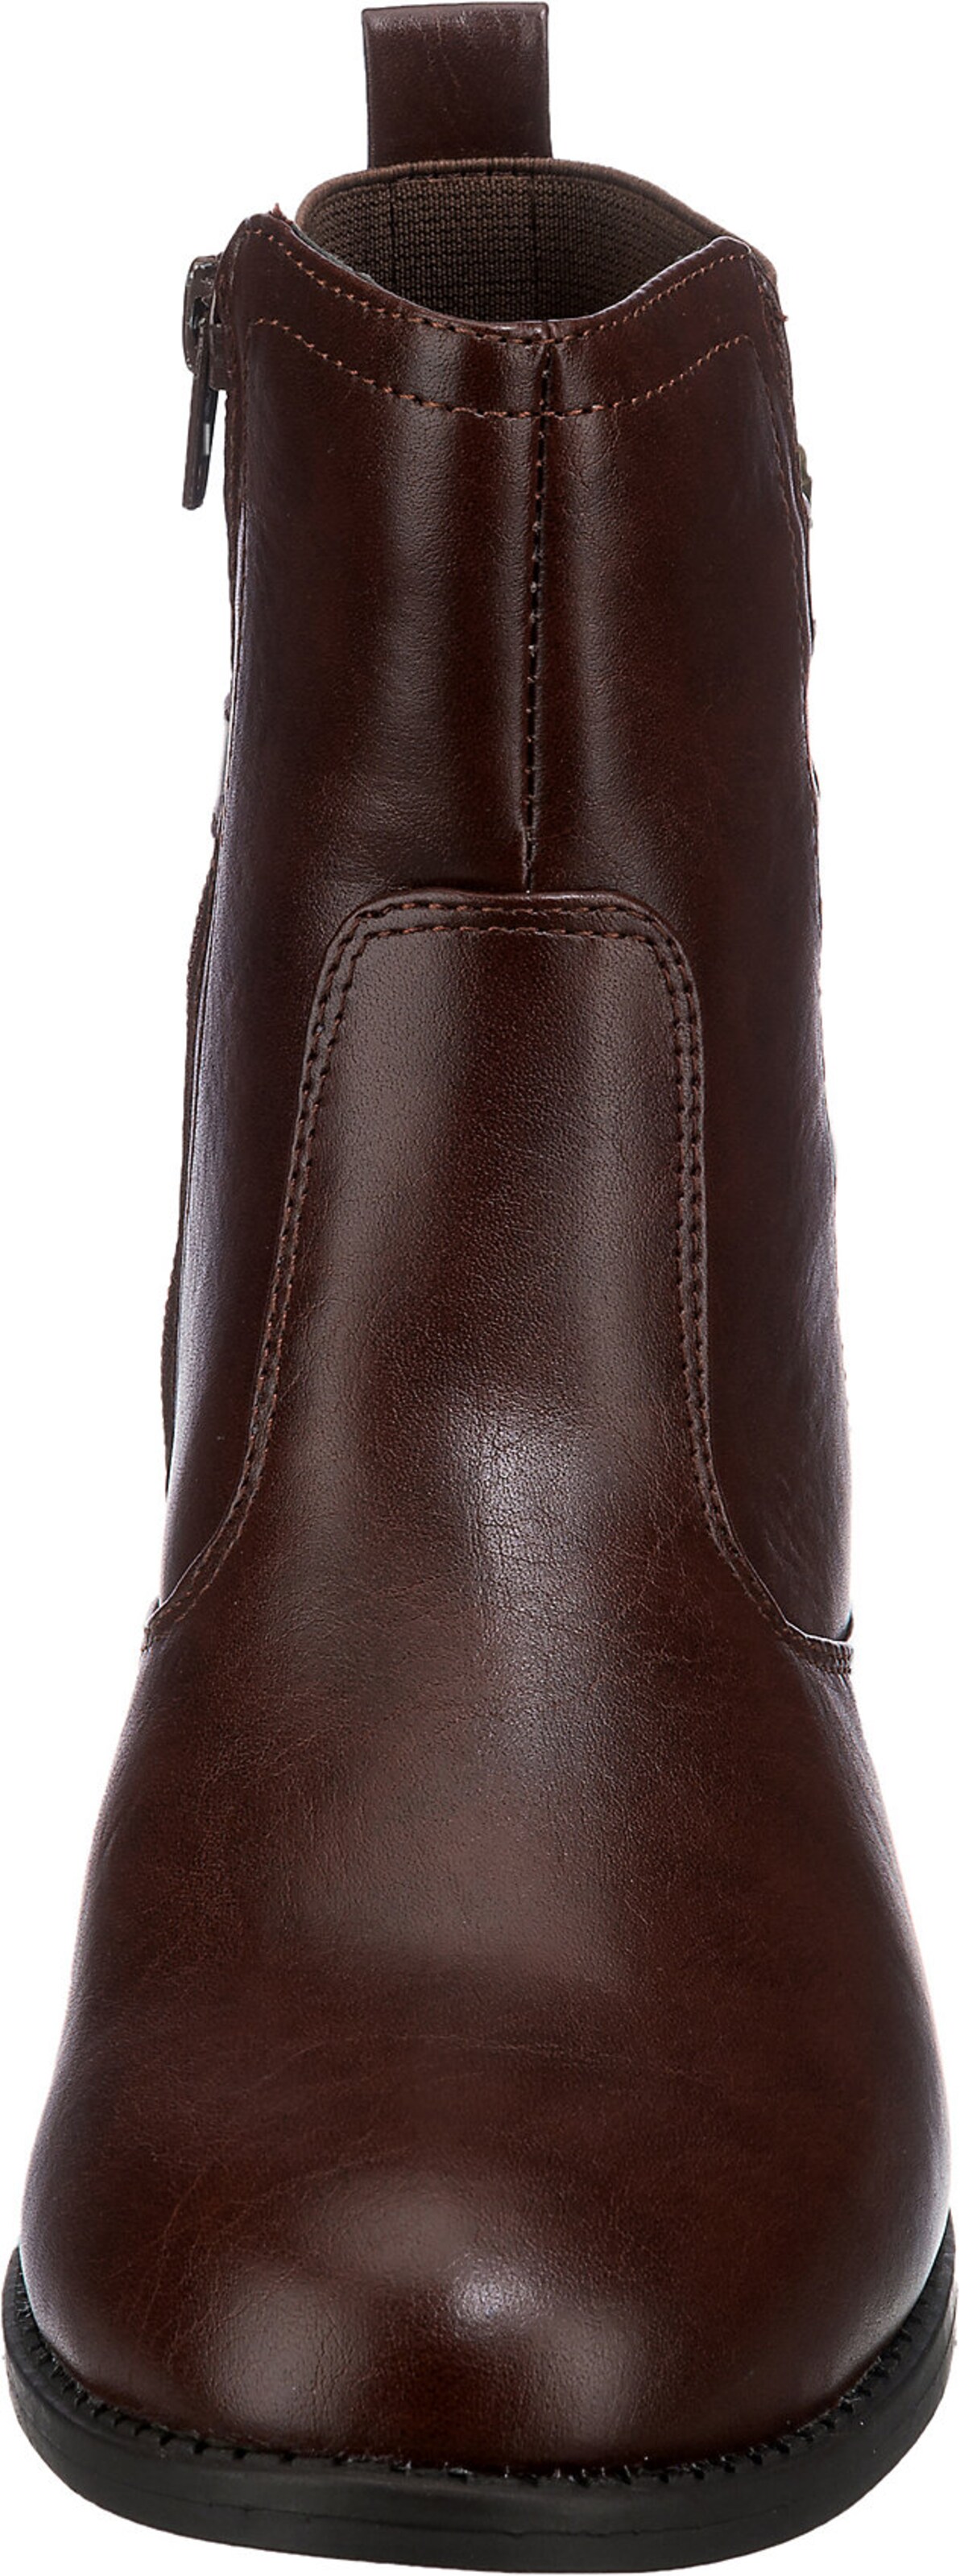 Frauen Stiefeletten ambellis Chelsea Boots in Braun - RL12207